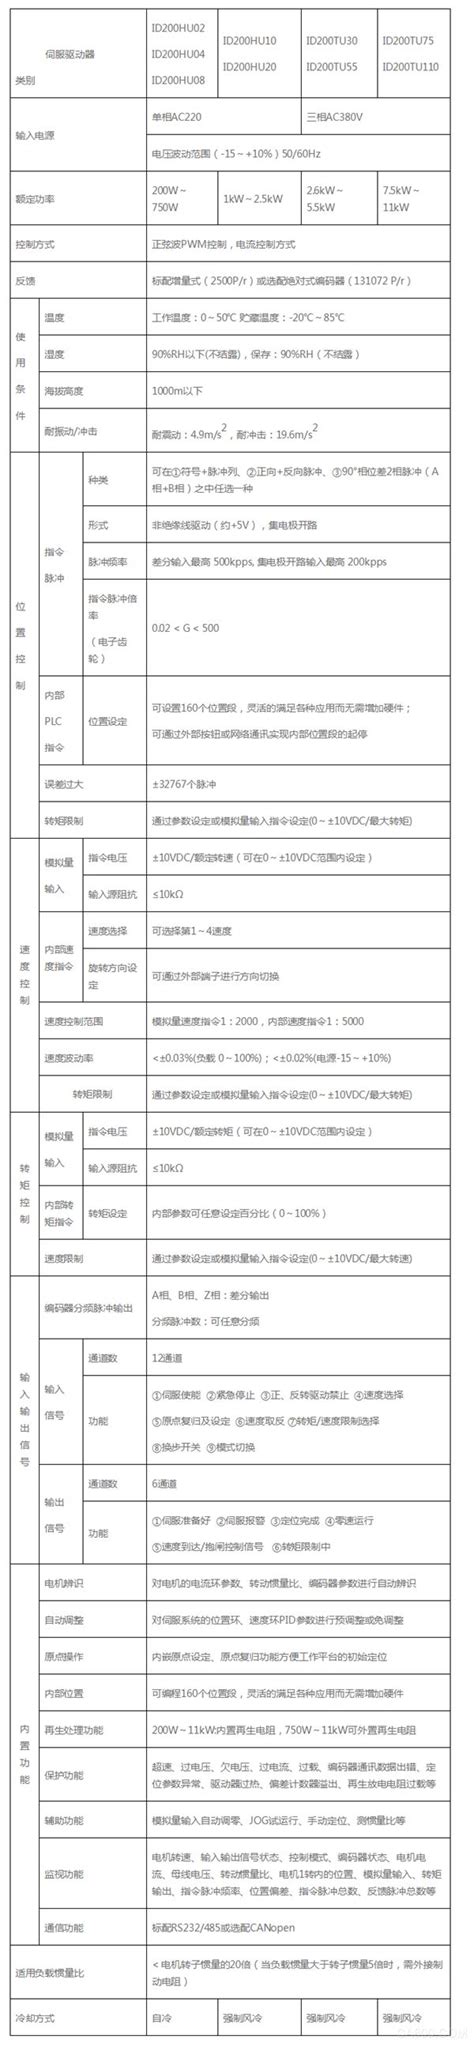 艾威图ID200系列伺服ID200-产品中心-深圳市艾威图技术有限公司门户-中国自动化网(ca800.com)